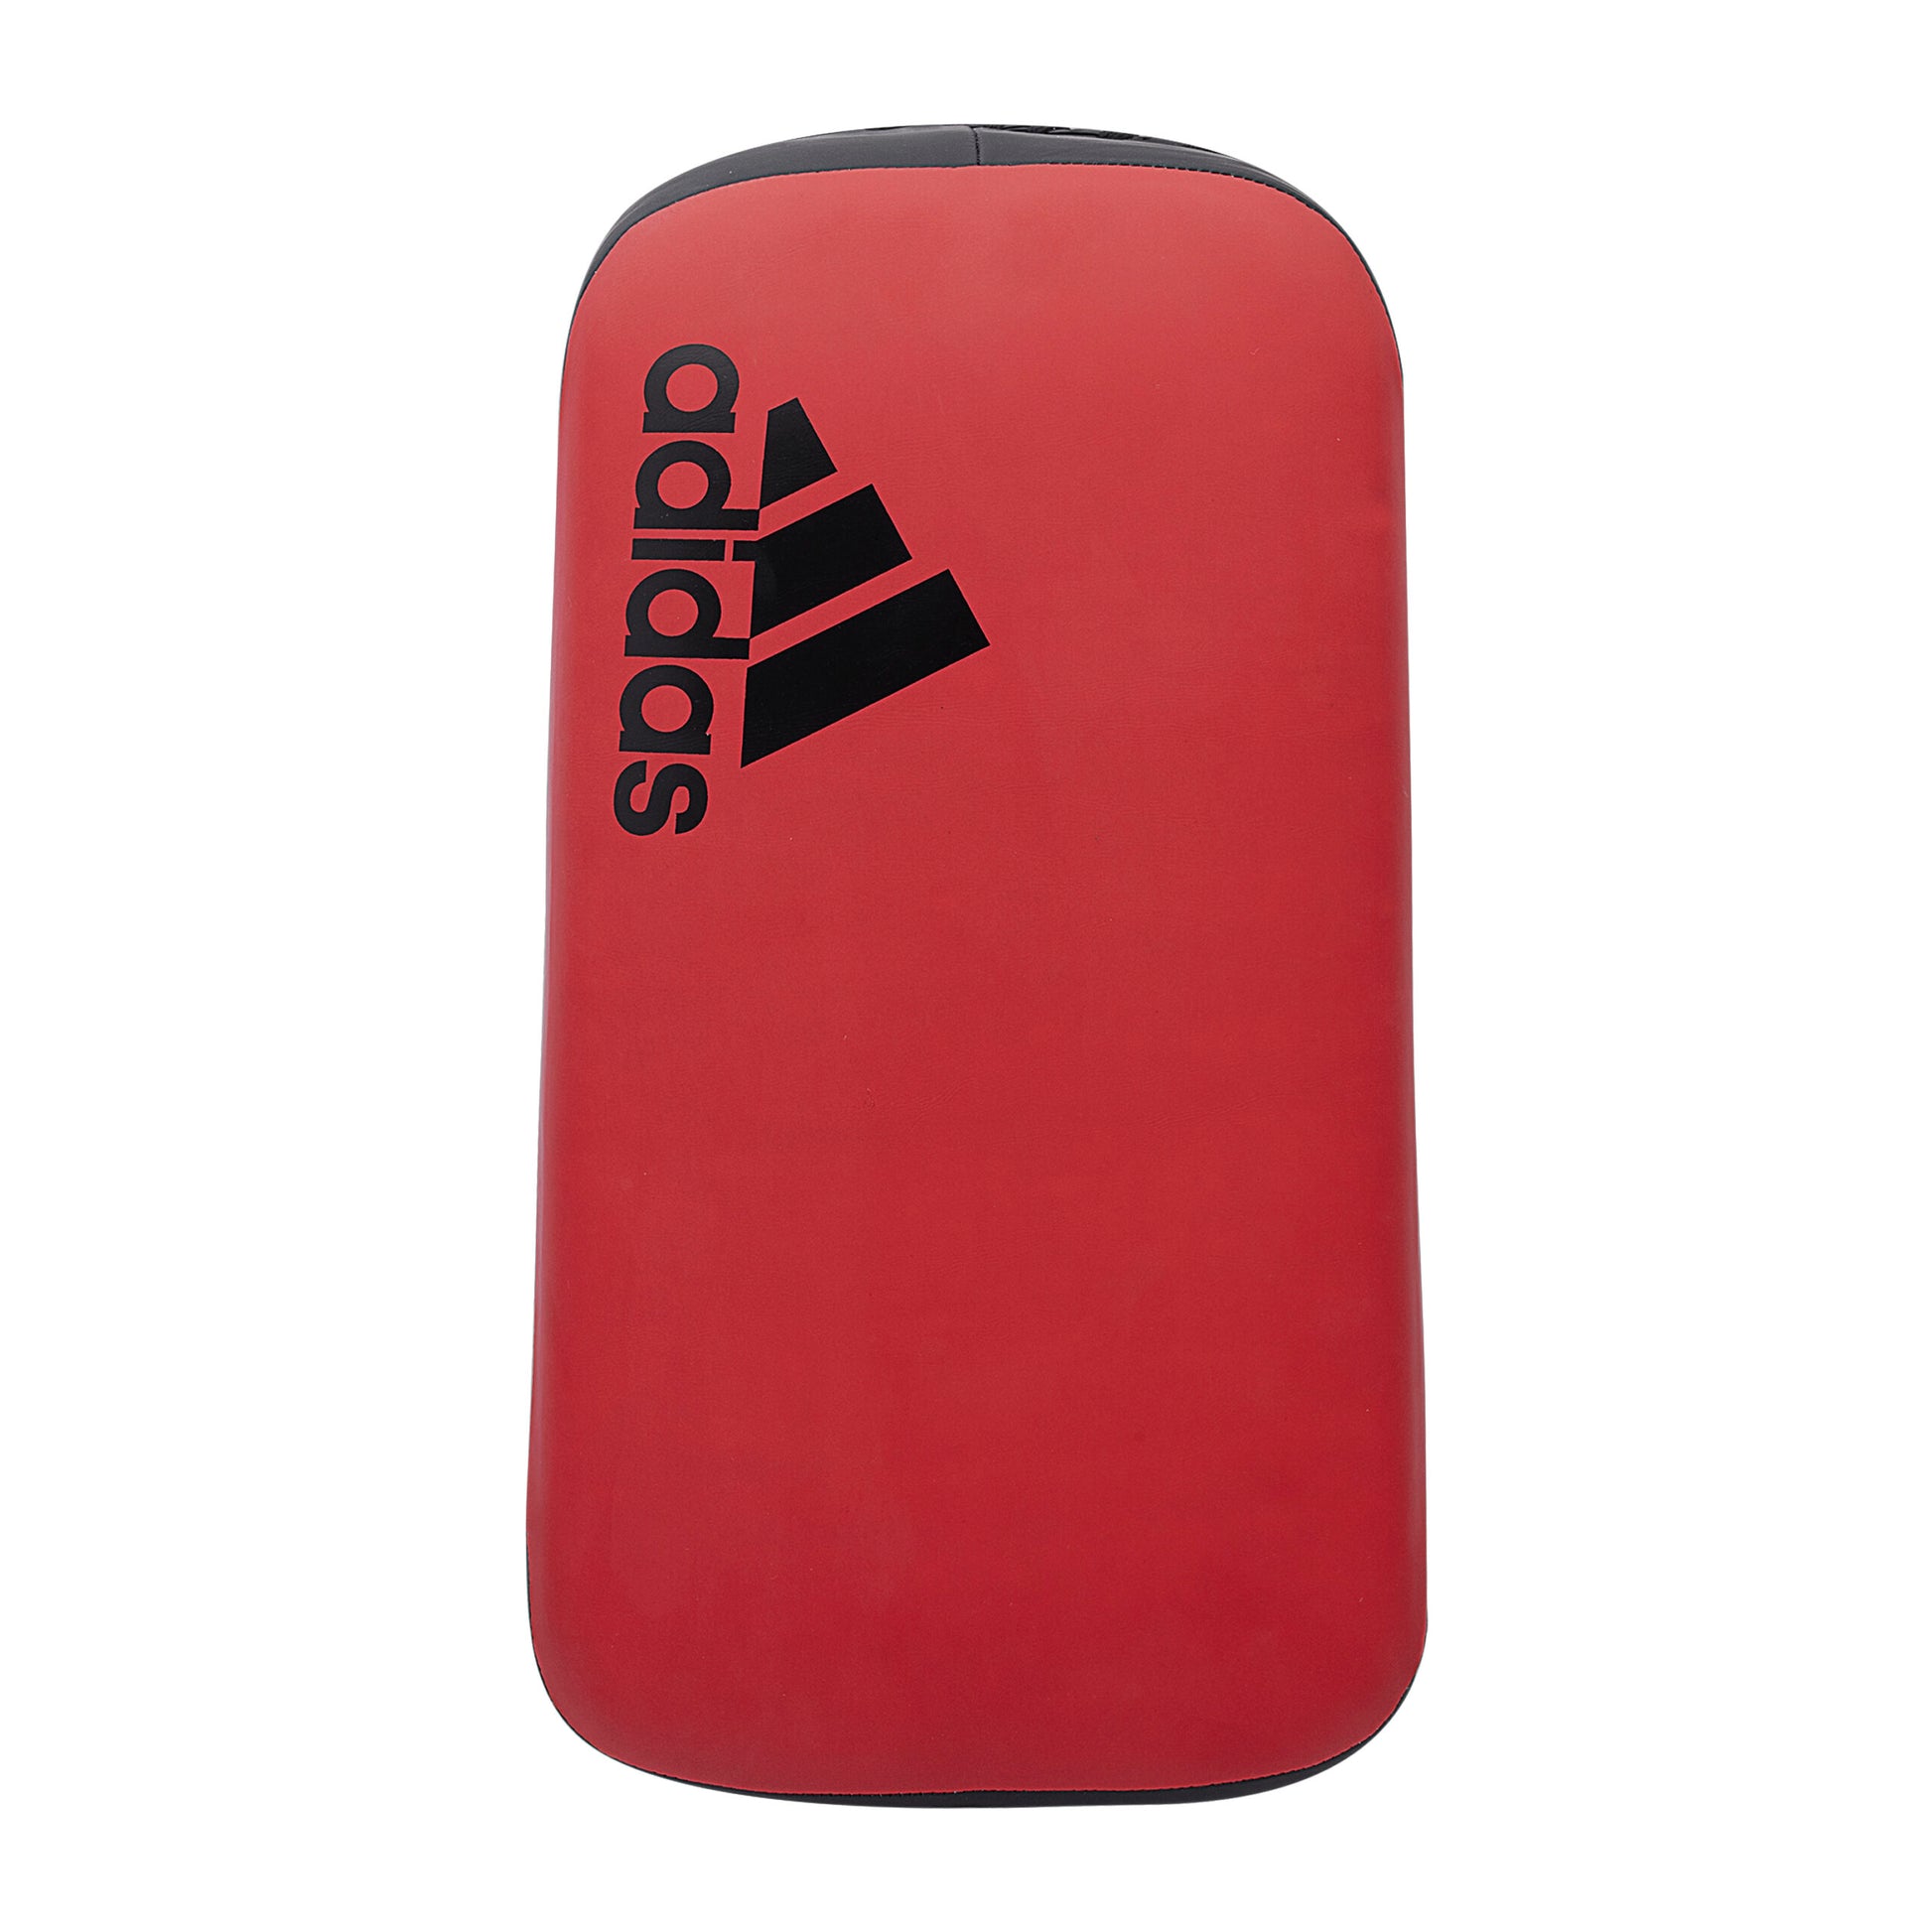 Adic50tp Adidas Thai Pad Vivid Red Black 01